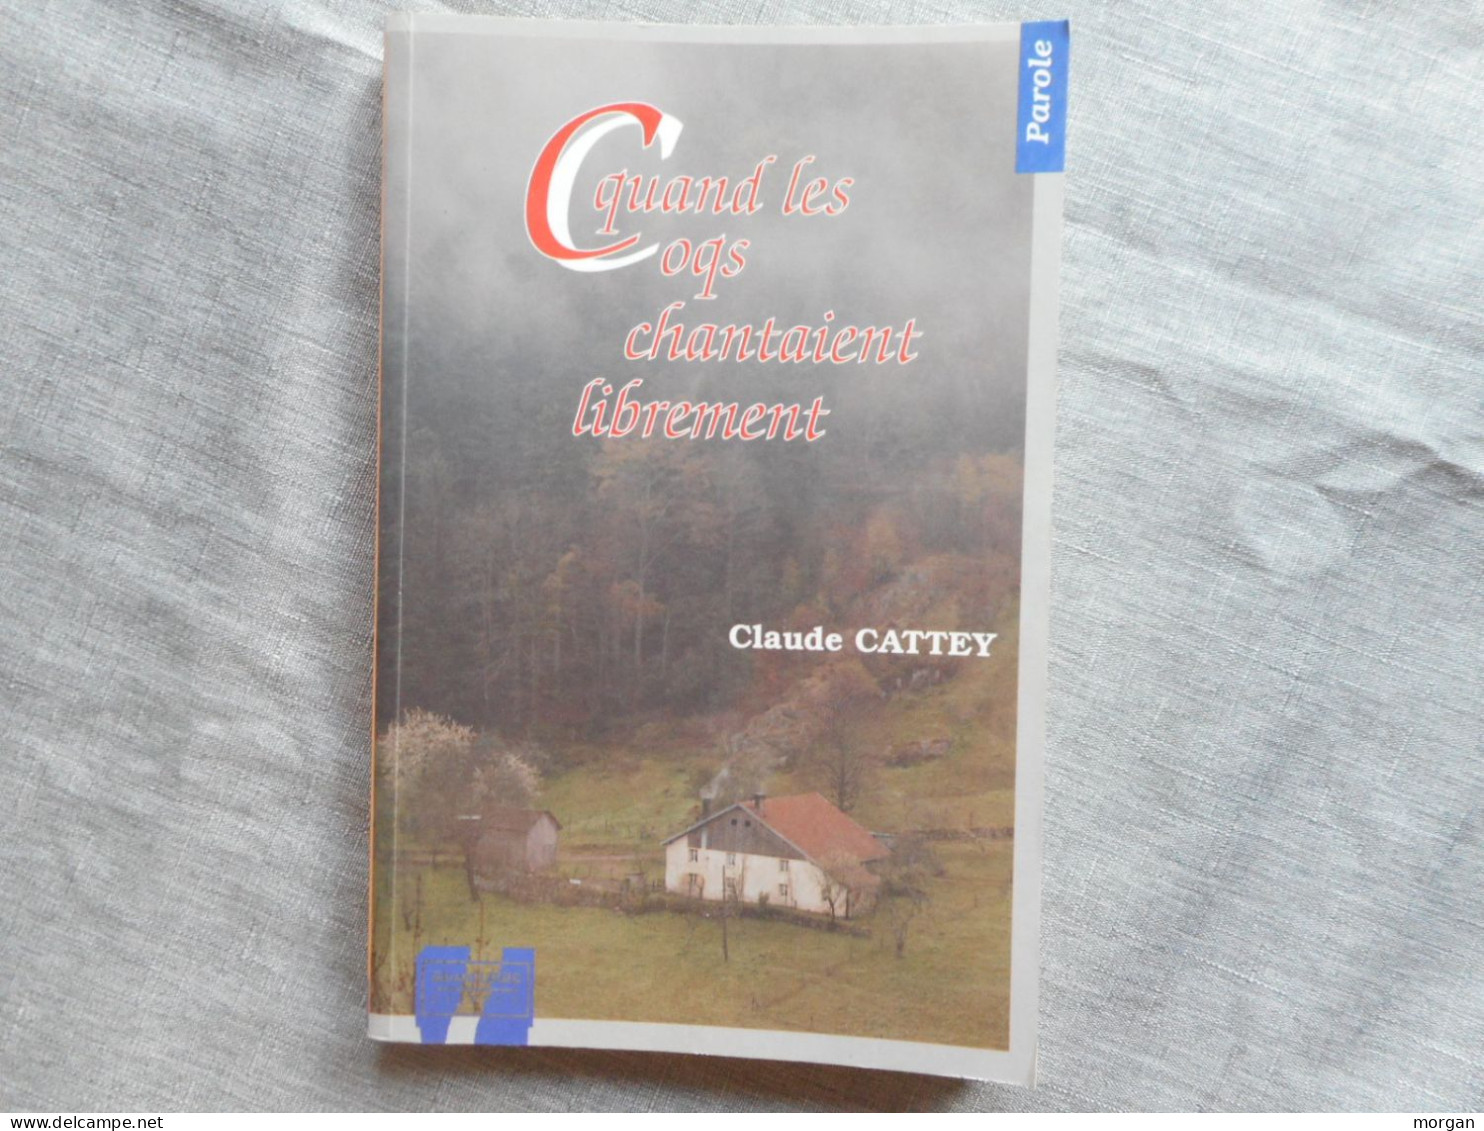 LORRAINE - VOSGES, QUAND LES COQS CHANTAIENT LIBREMENT, CLAUDE CATTEY, 1995 - Lorraine - Vosges